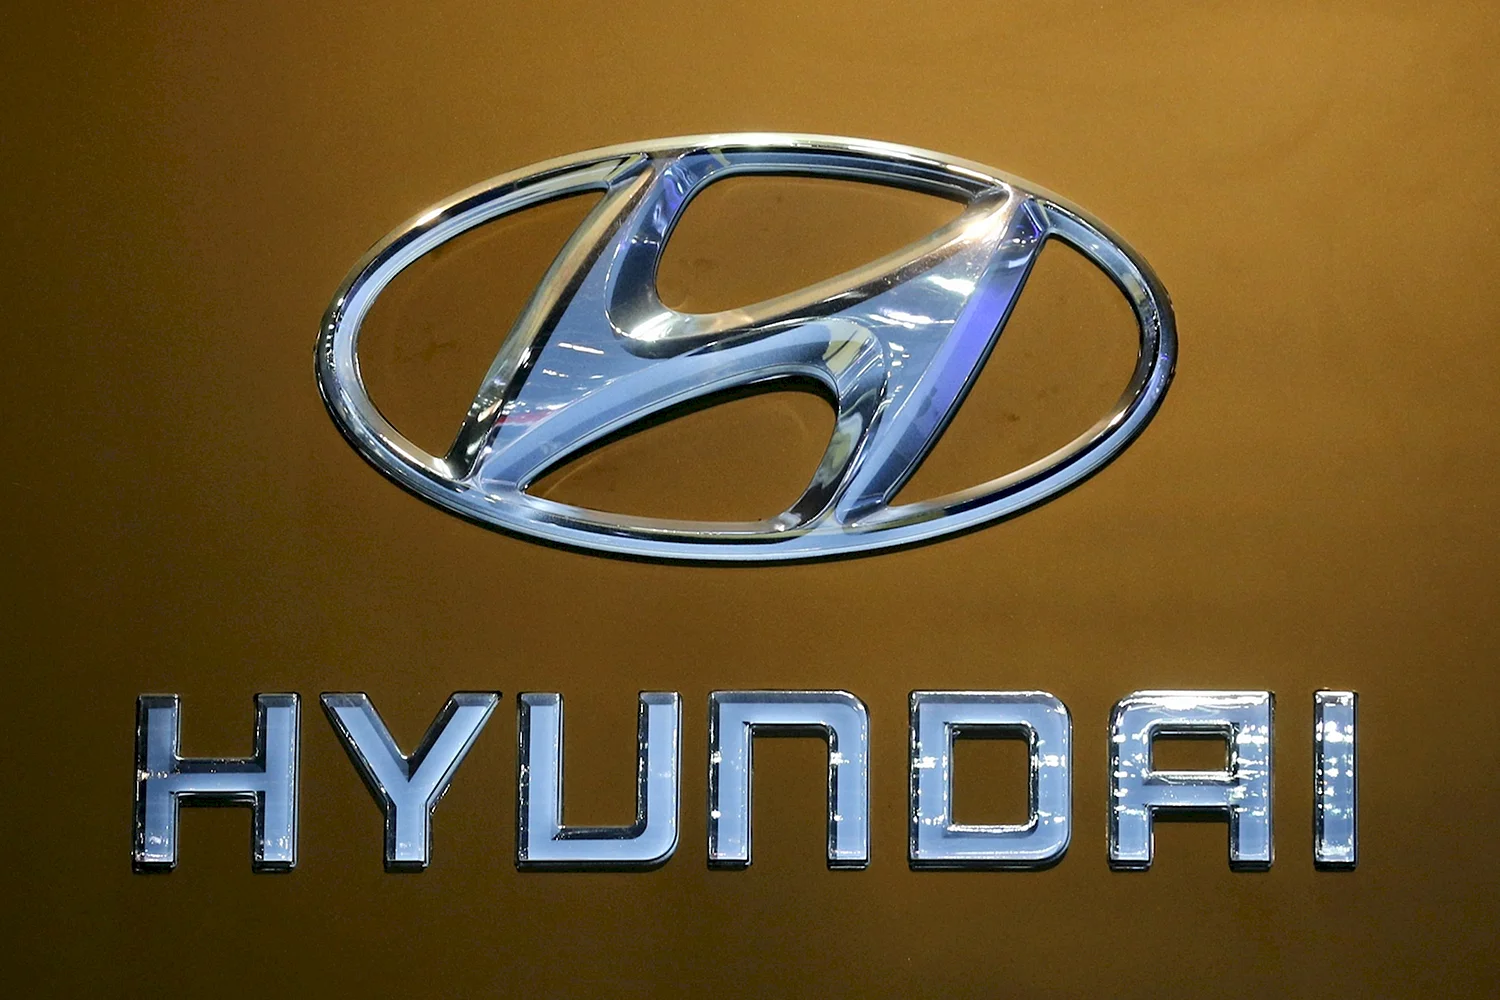 Hyundai Motor